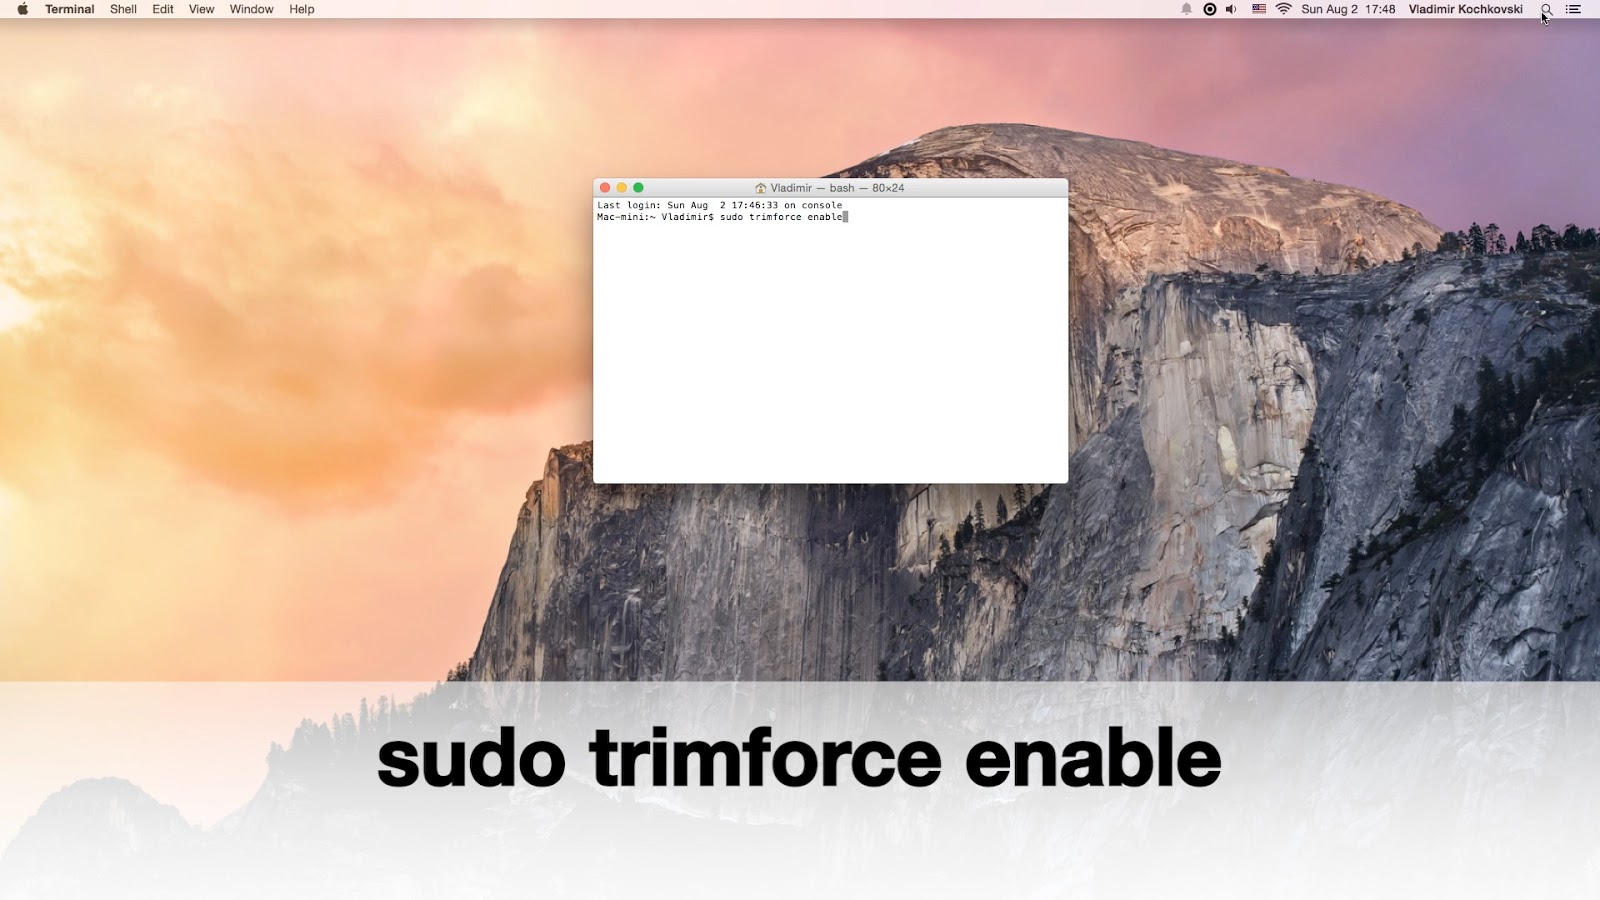 Консоль Mac os. Mac os x Yosemite 10.10.3. Mac os факты. Sudo trimforce enable. Macos support